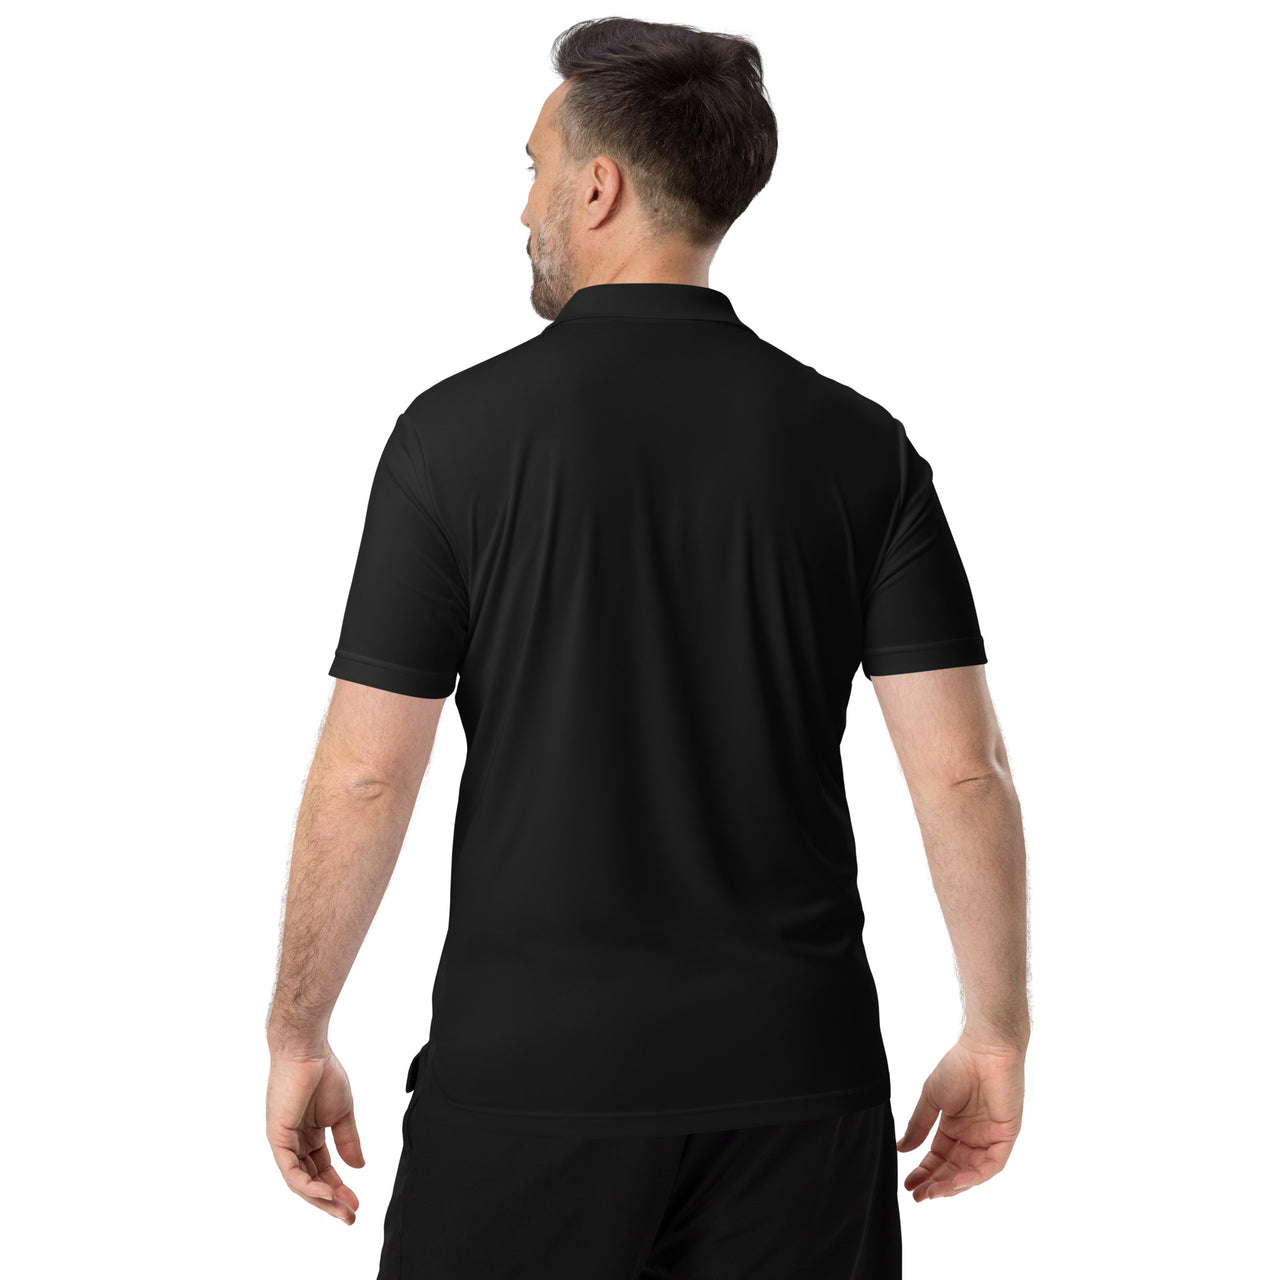 Men's Capricorn Black Polo Shirt